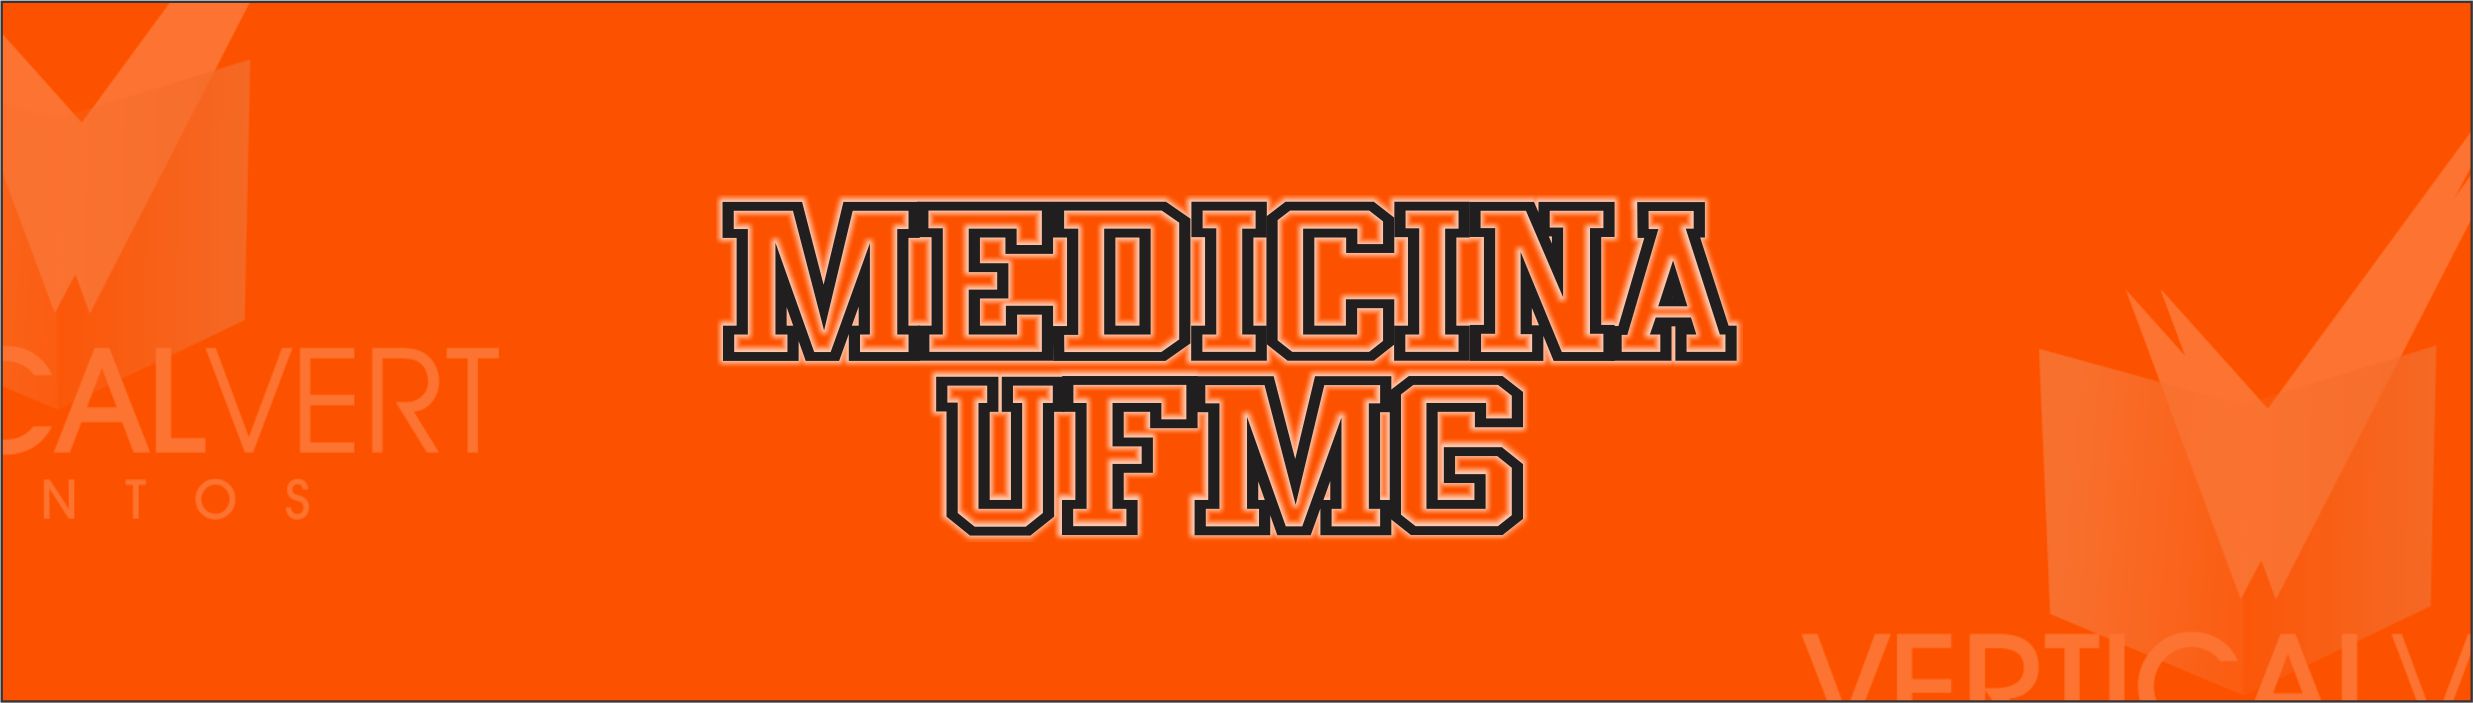 Medicina UFMG - Turma 159